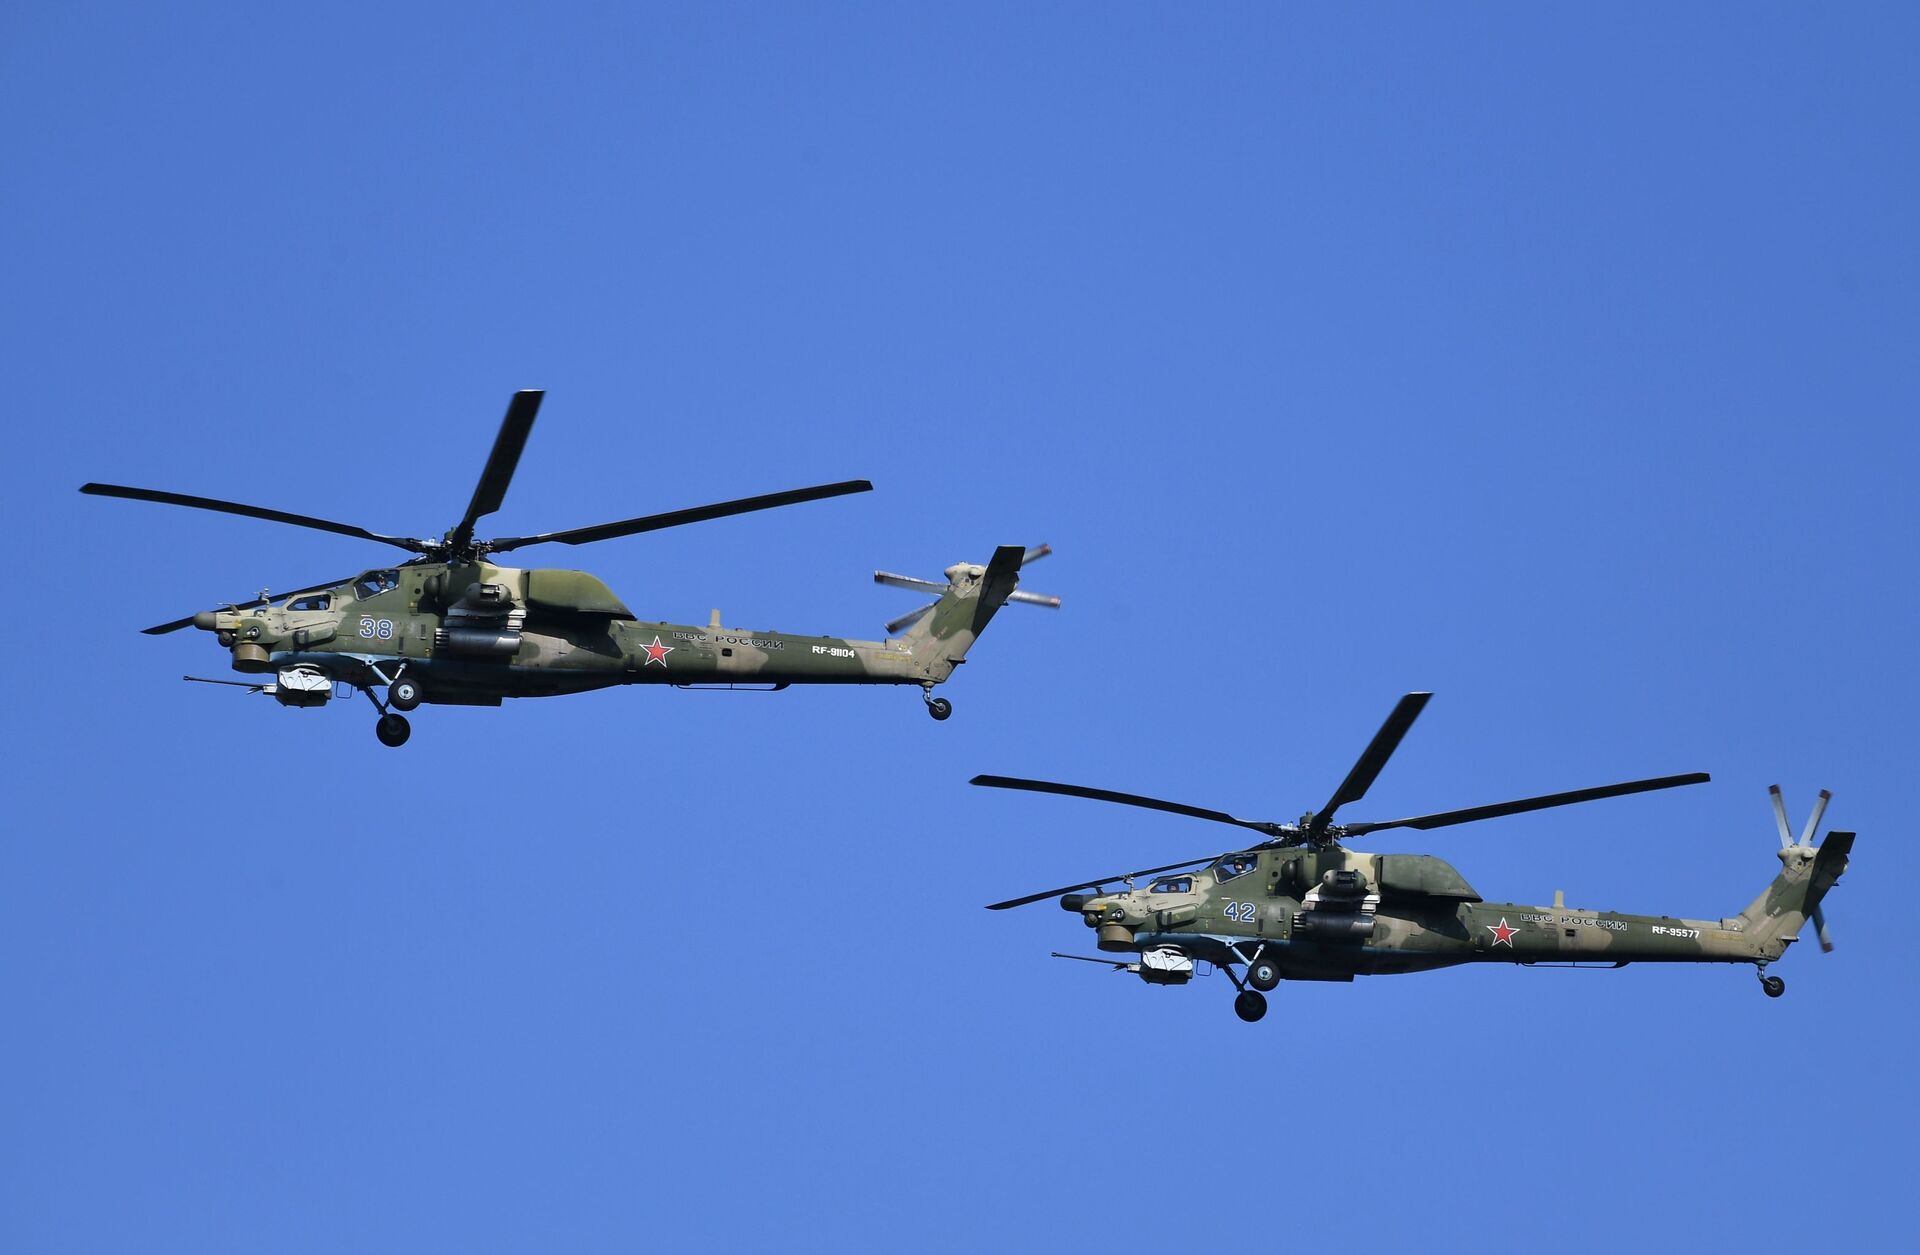 Helicóptero russo Mi-28 faz inimigos 'fugirem aos gritos', diz mídia canadense - Sputnik Brasil, 1920, 01.06.2021